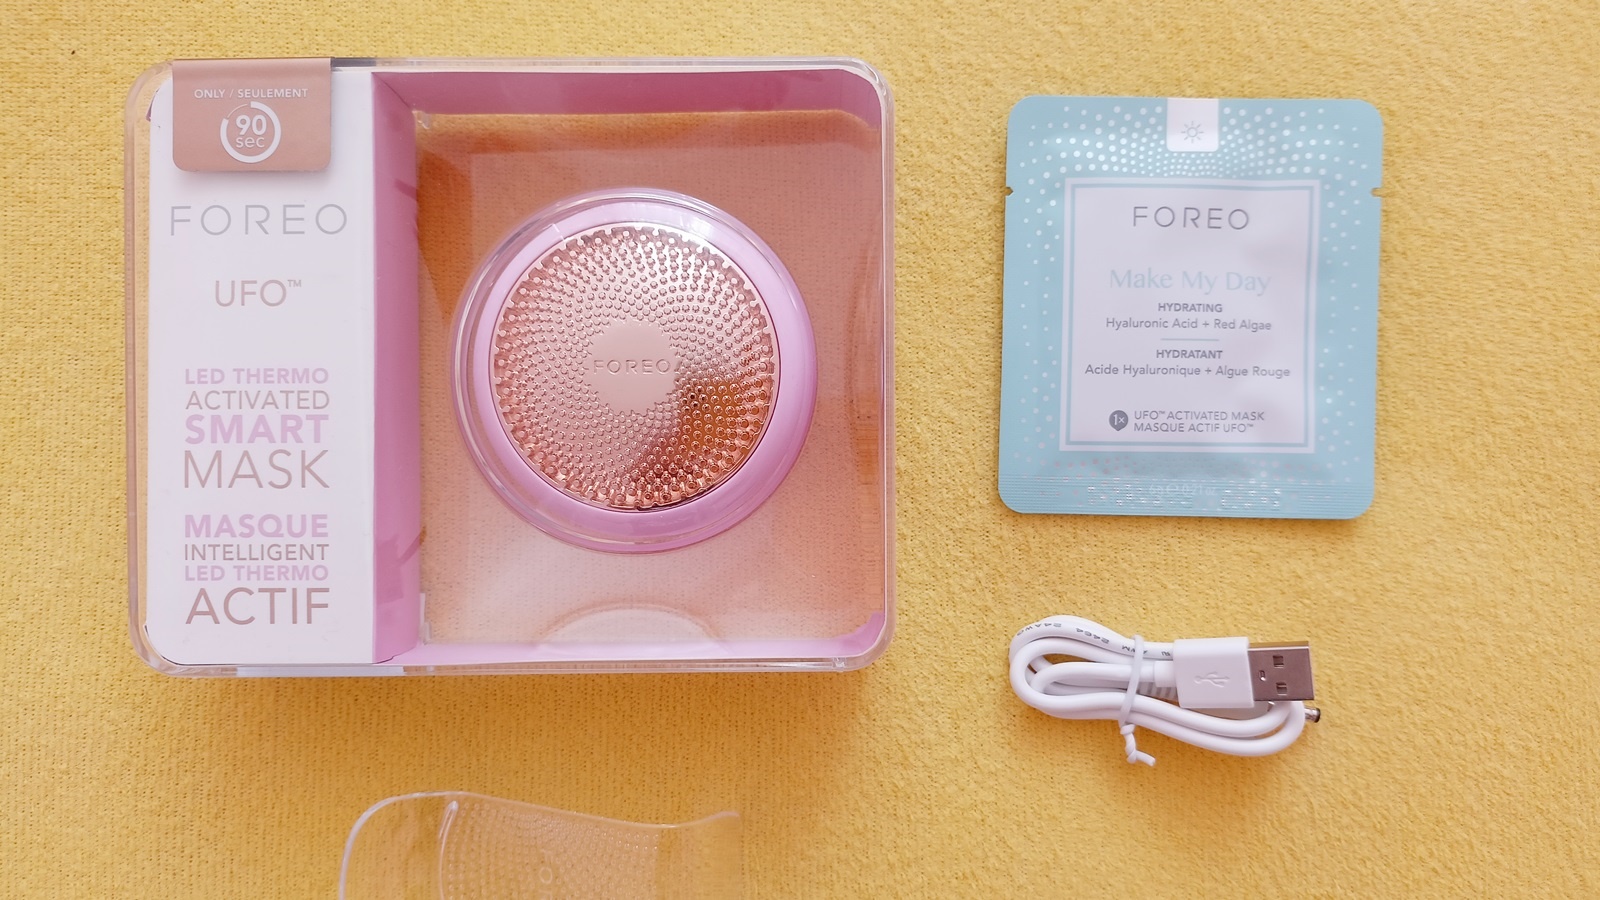 Bewertung FOREO UFO: Schallgerät zur Beschleunigung der Wirkung der Gesichtsmaske